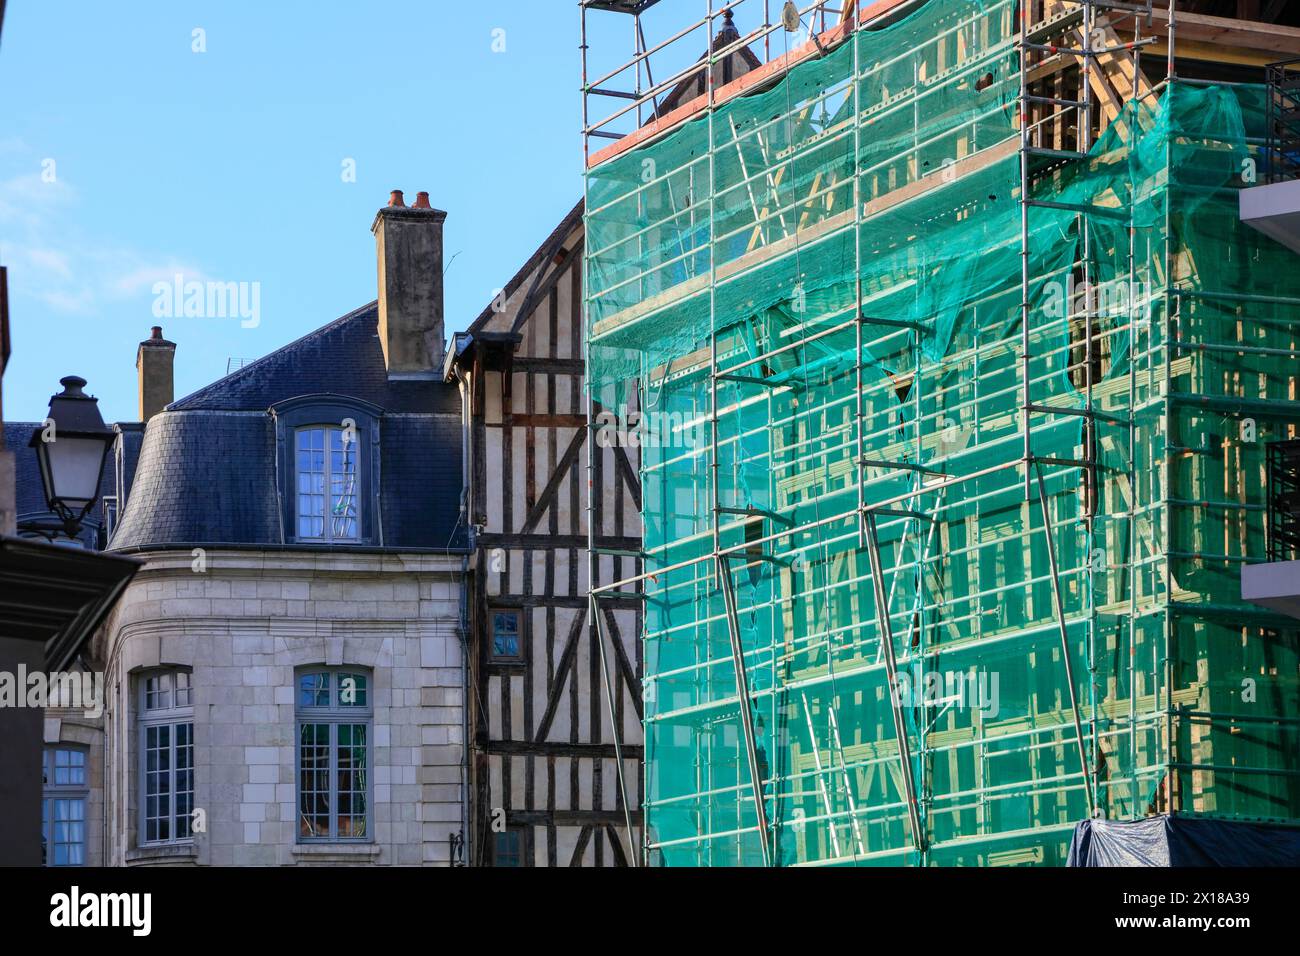 Casa a graticcio con impalcature, esposizione a graticcio nel centro storico di Troyes, dipartimento di Aube, regione Grand Est, Francia, Euro Foto Stock